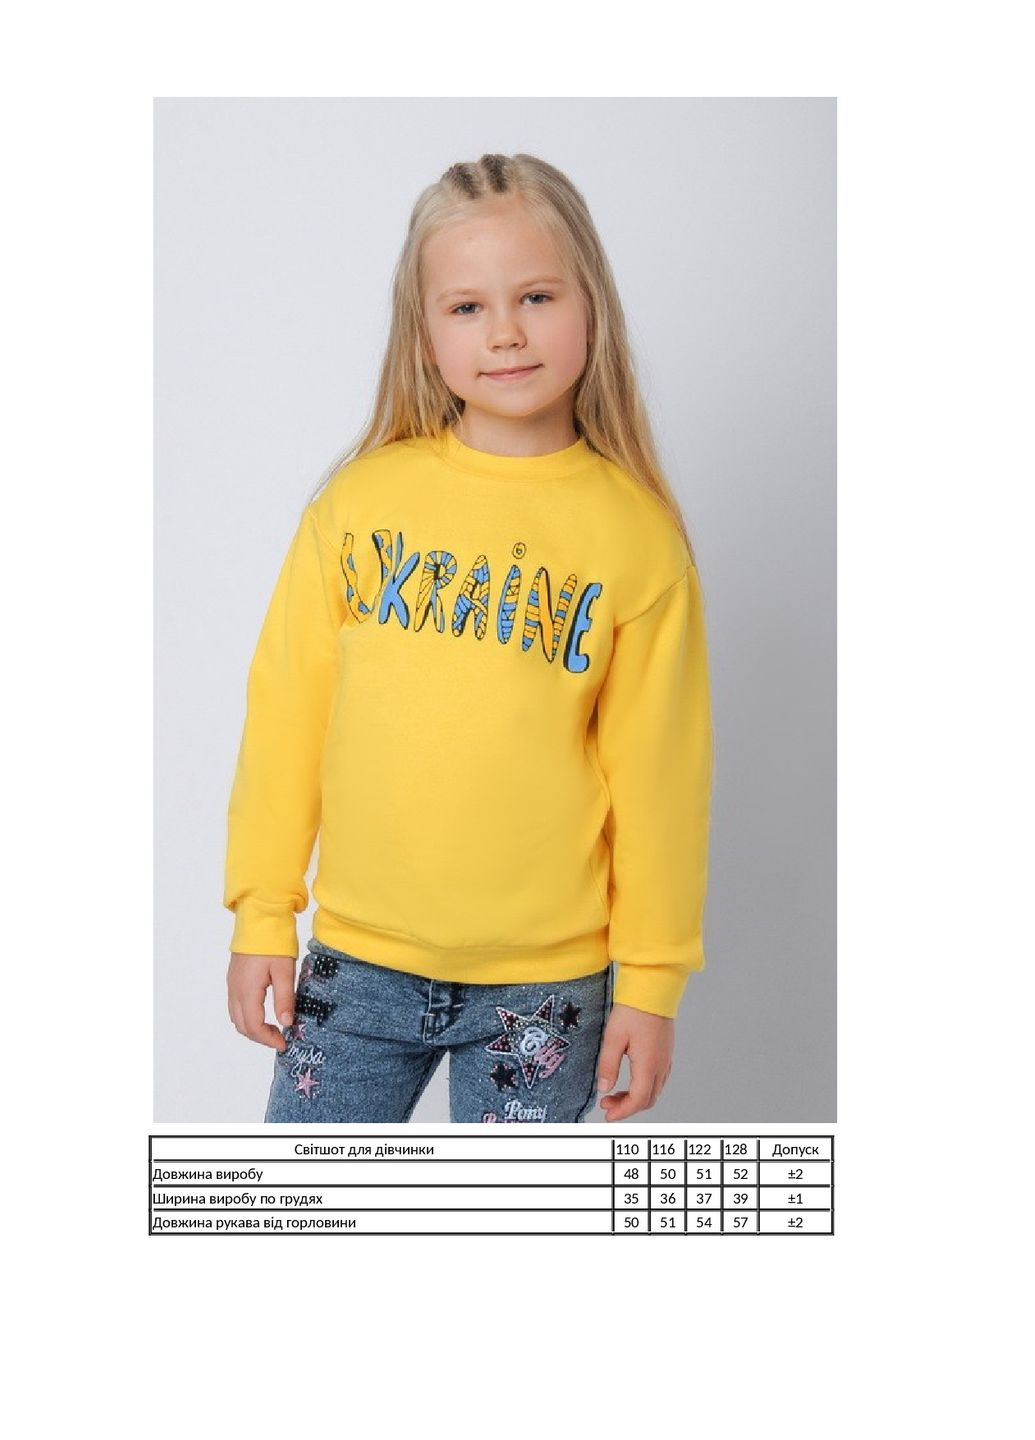 KINDER MODE свитшот для девочки однотонный желтый кэжуал хлопок